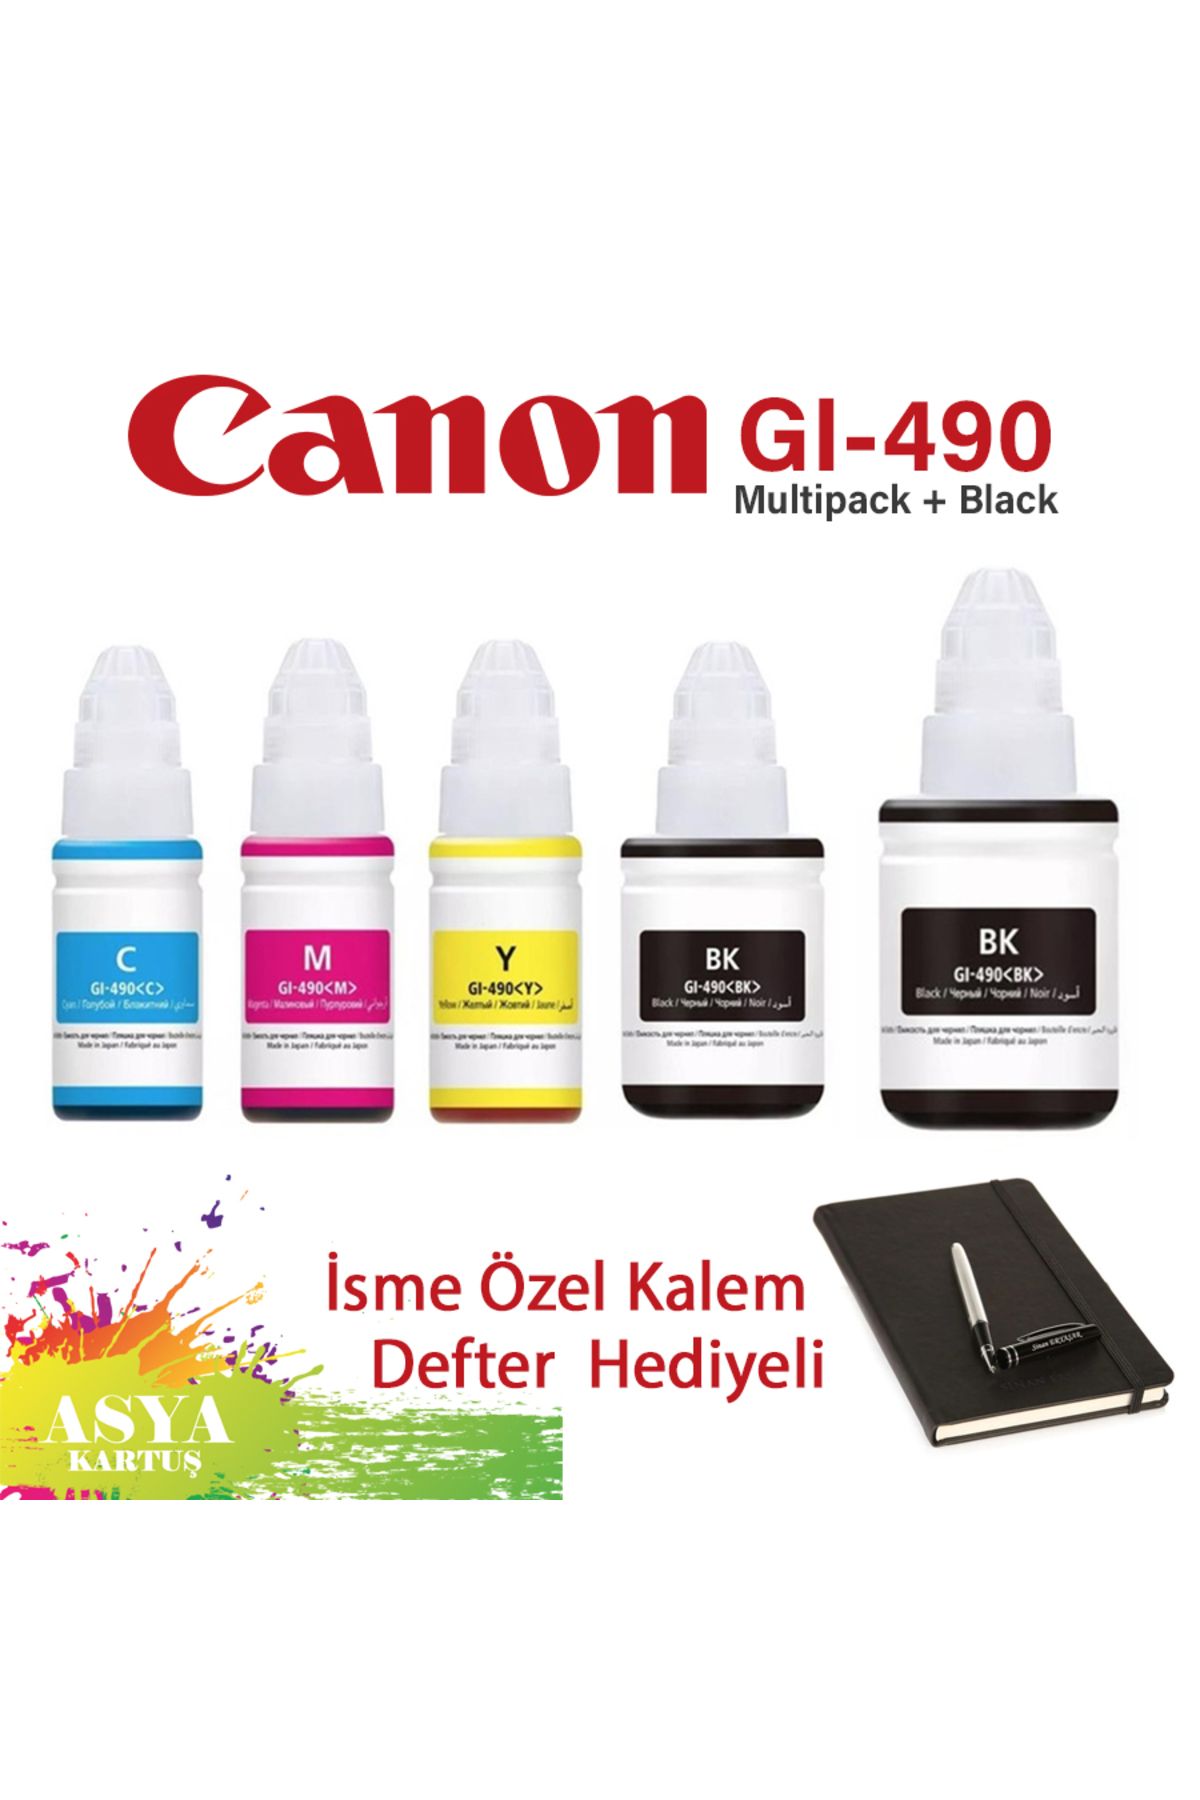 Canon Pixma G3411 Uyumlu GI-490 4 Renk Mürekkep + Siyah Hediyeli   CMYK + 1 BK hediyeli Set